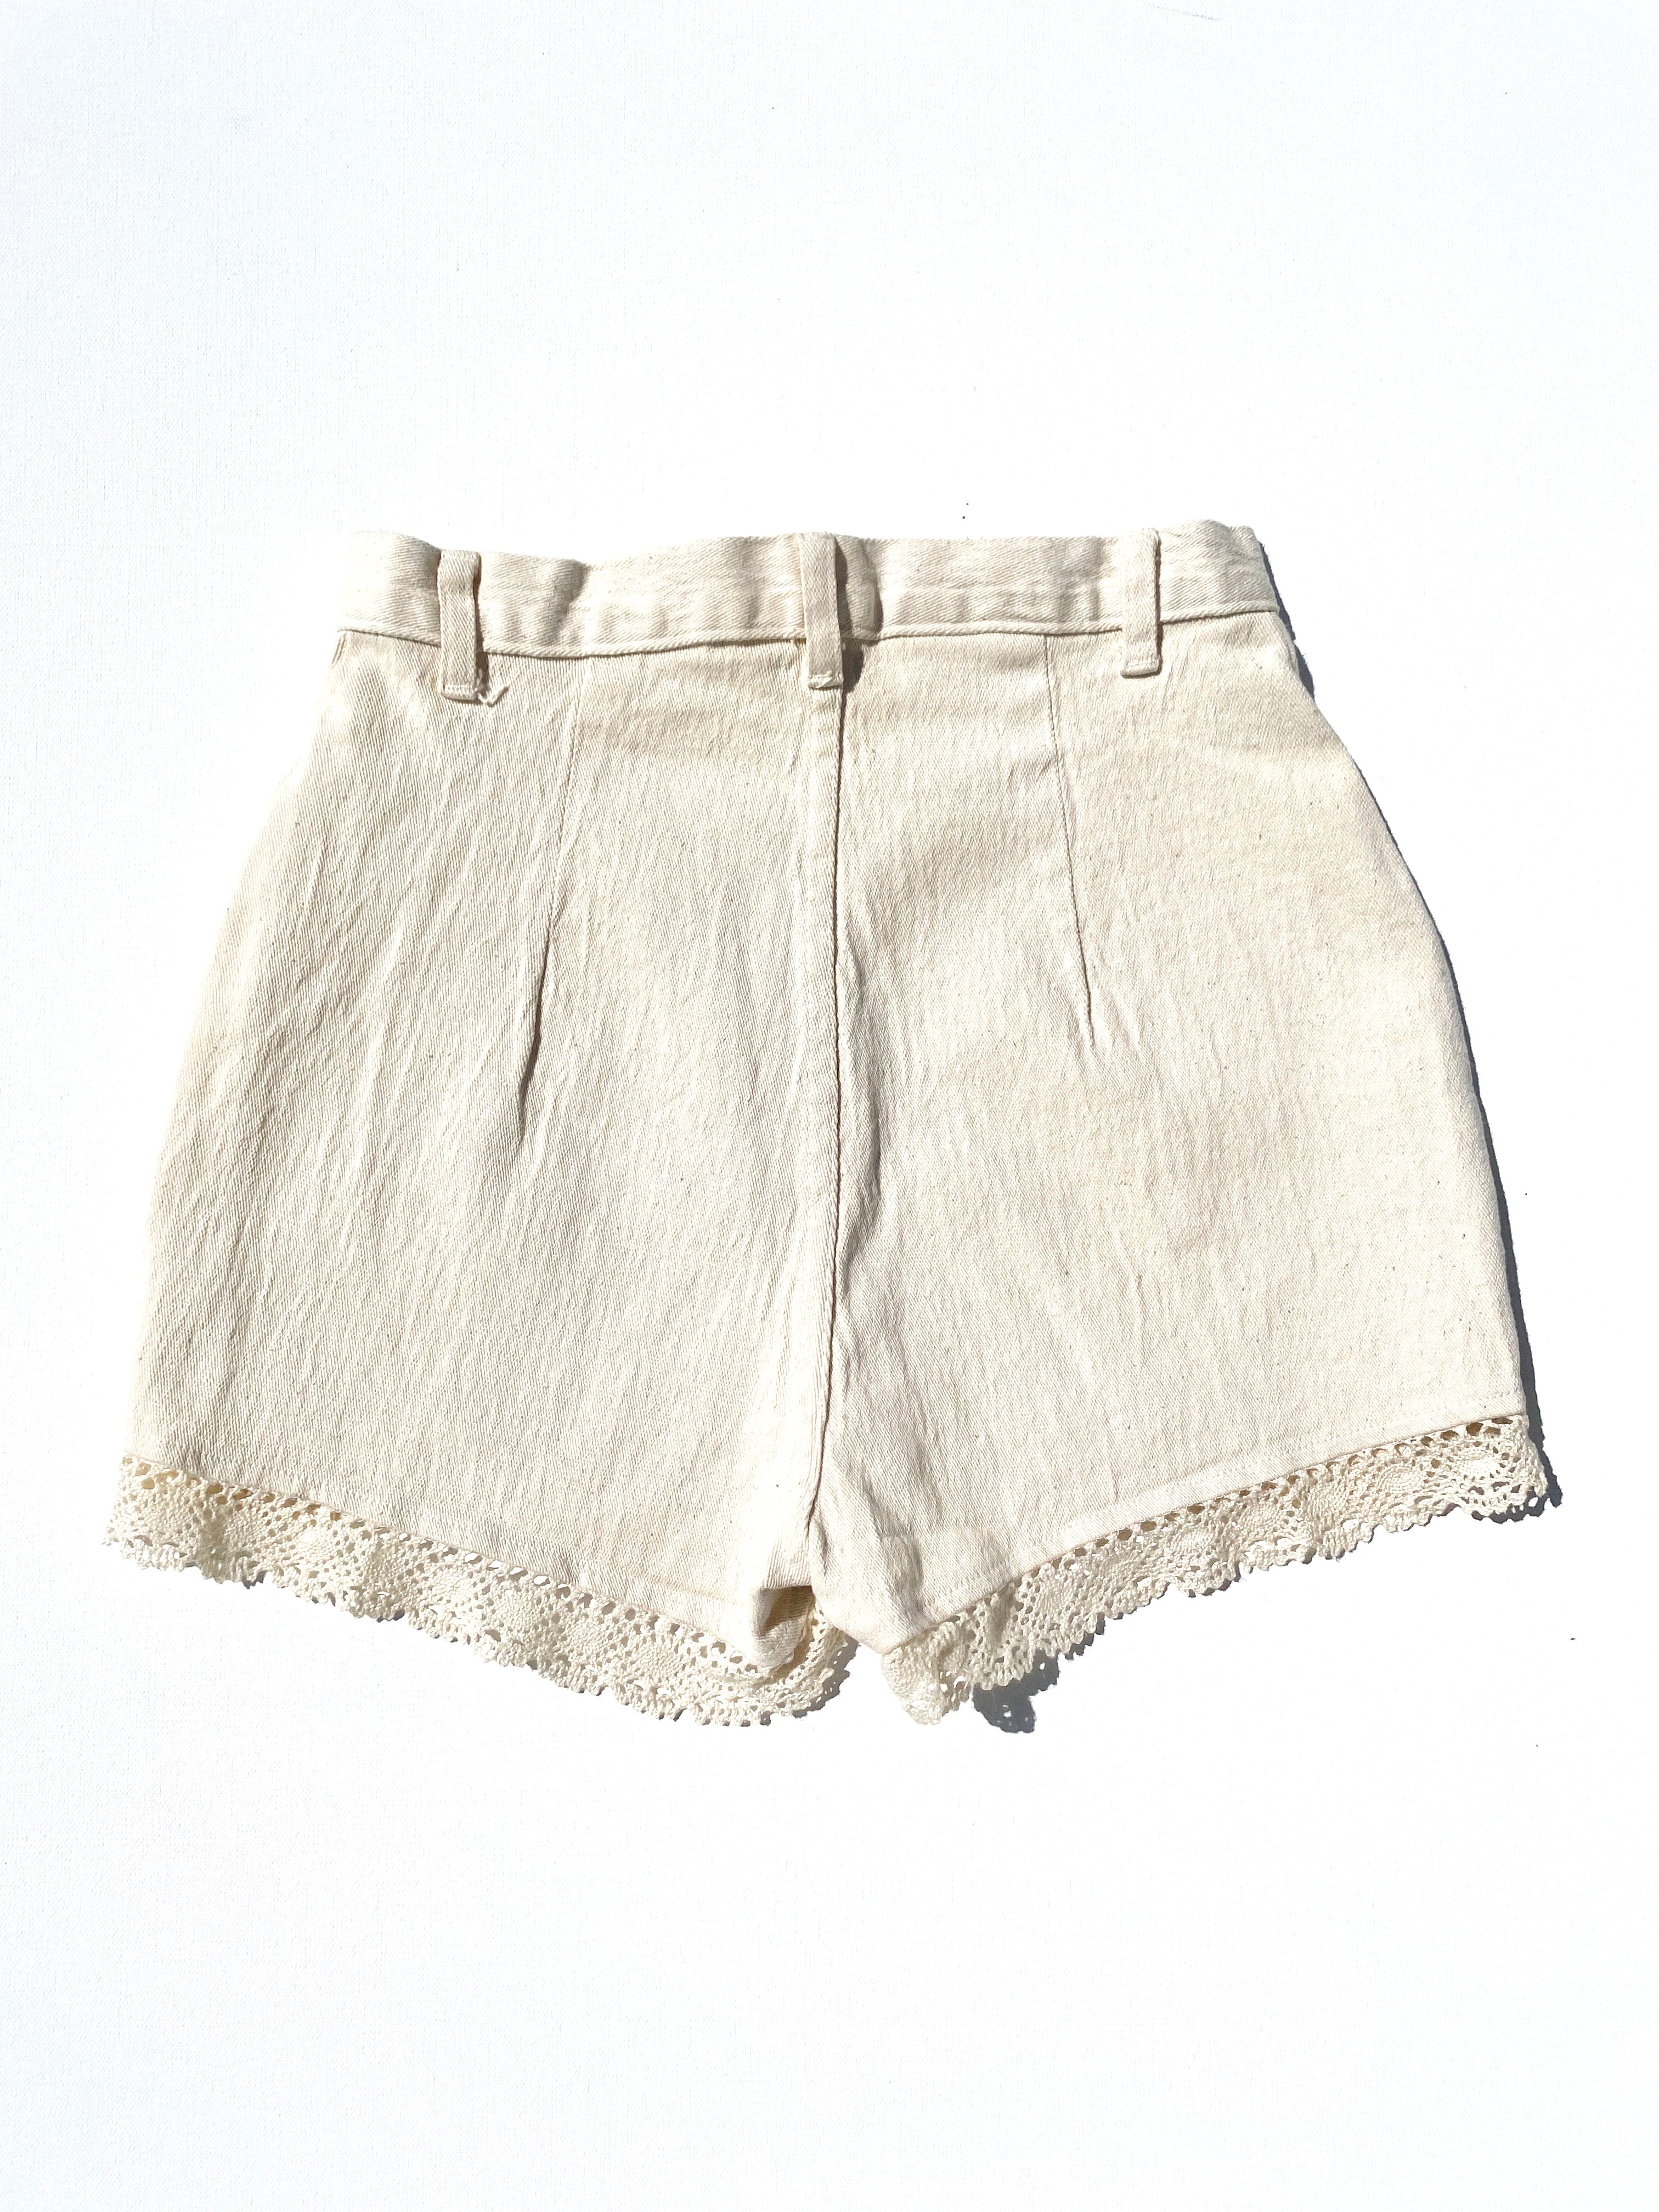 Vintage Linen Shorts - Cream Lace